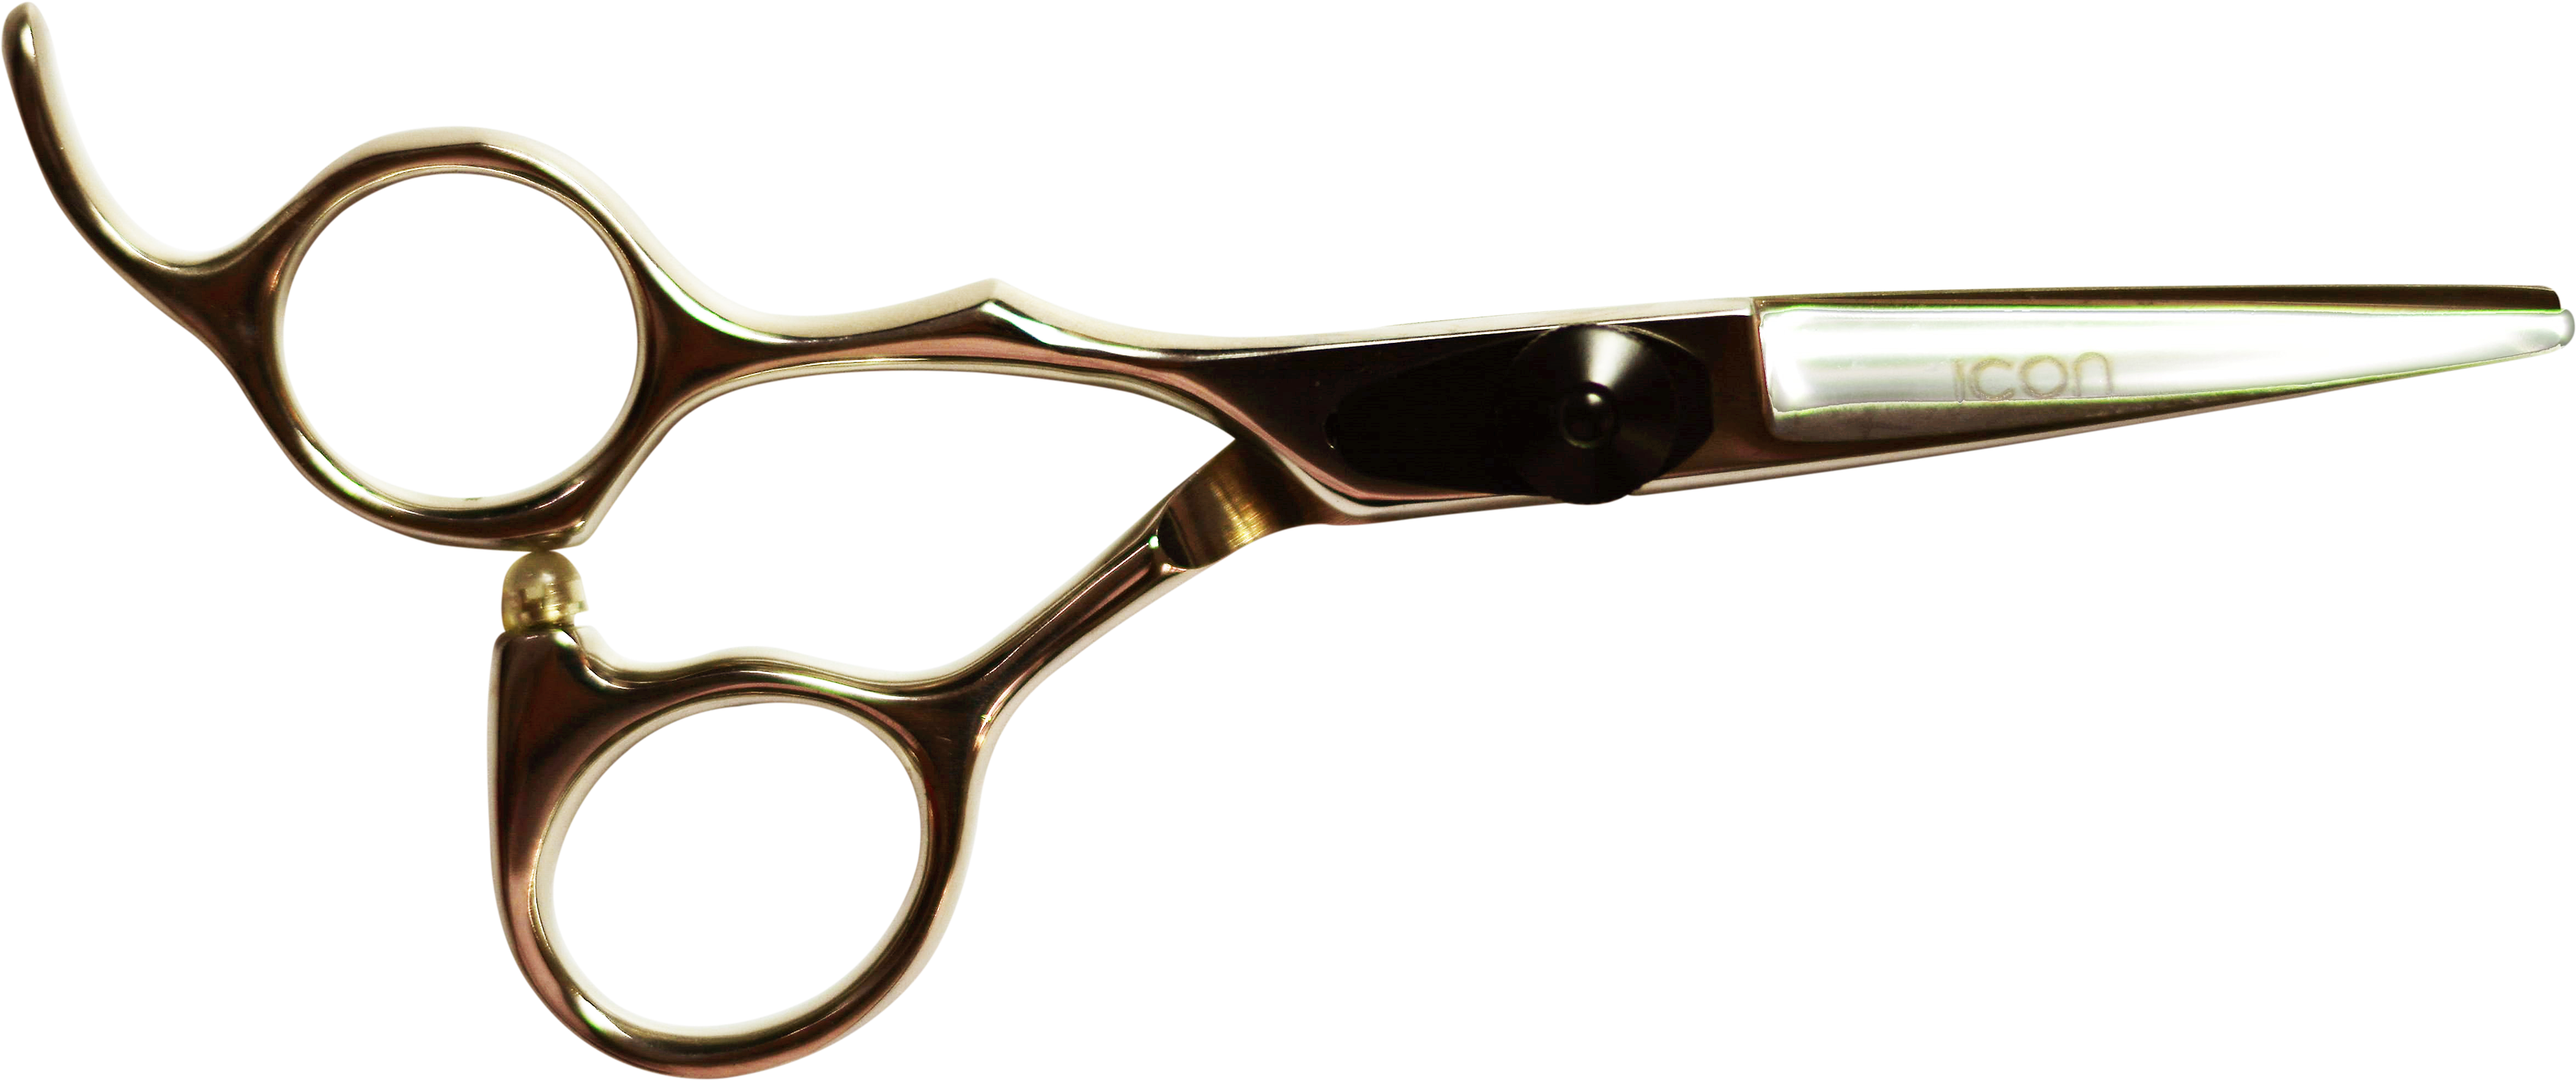 Icon 5' Left Haded Hair Cutting Shears Scissors - Hair-cutting Shears (4000x3000)